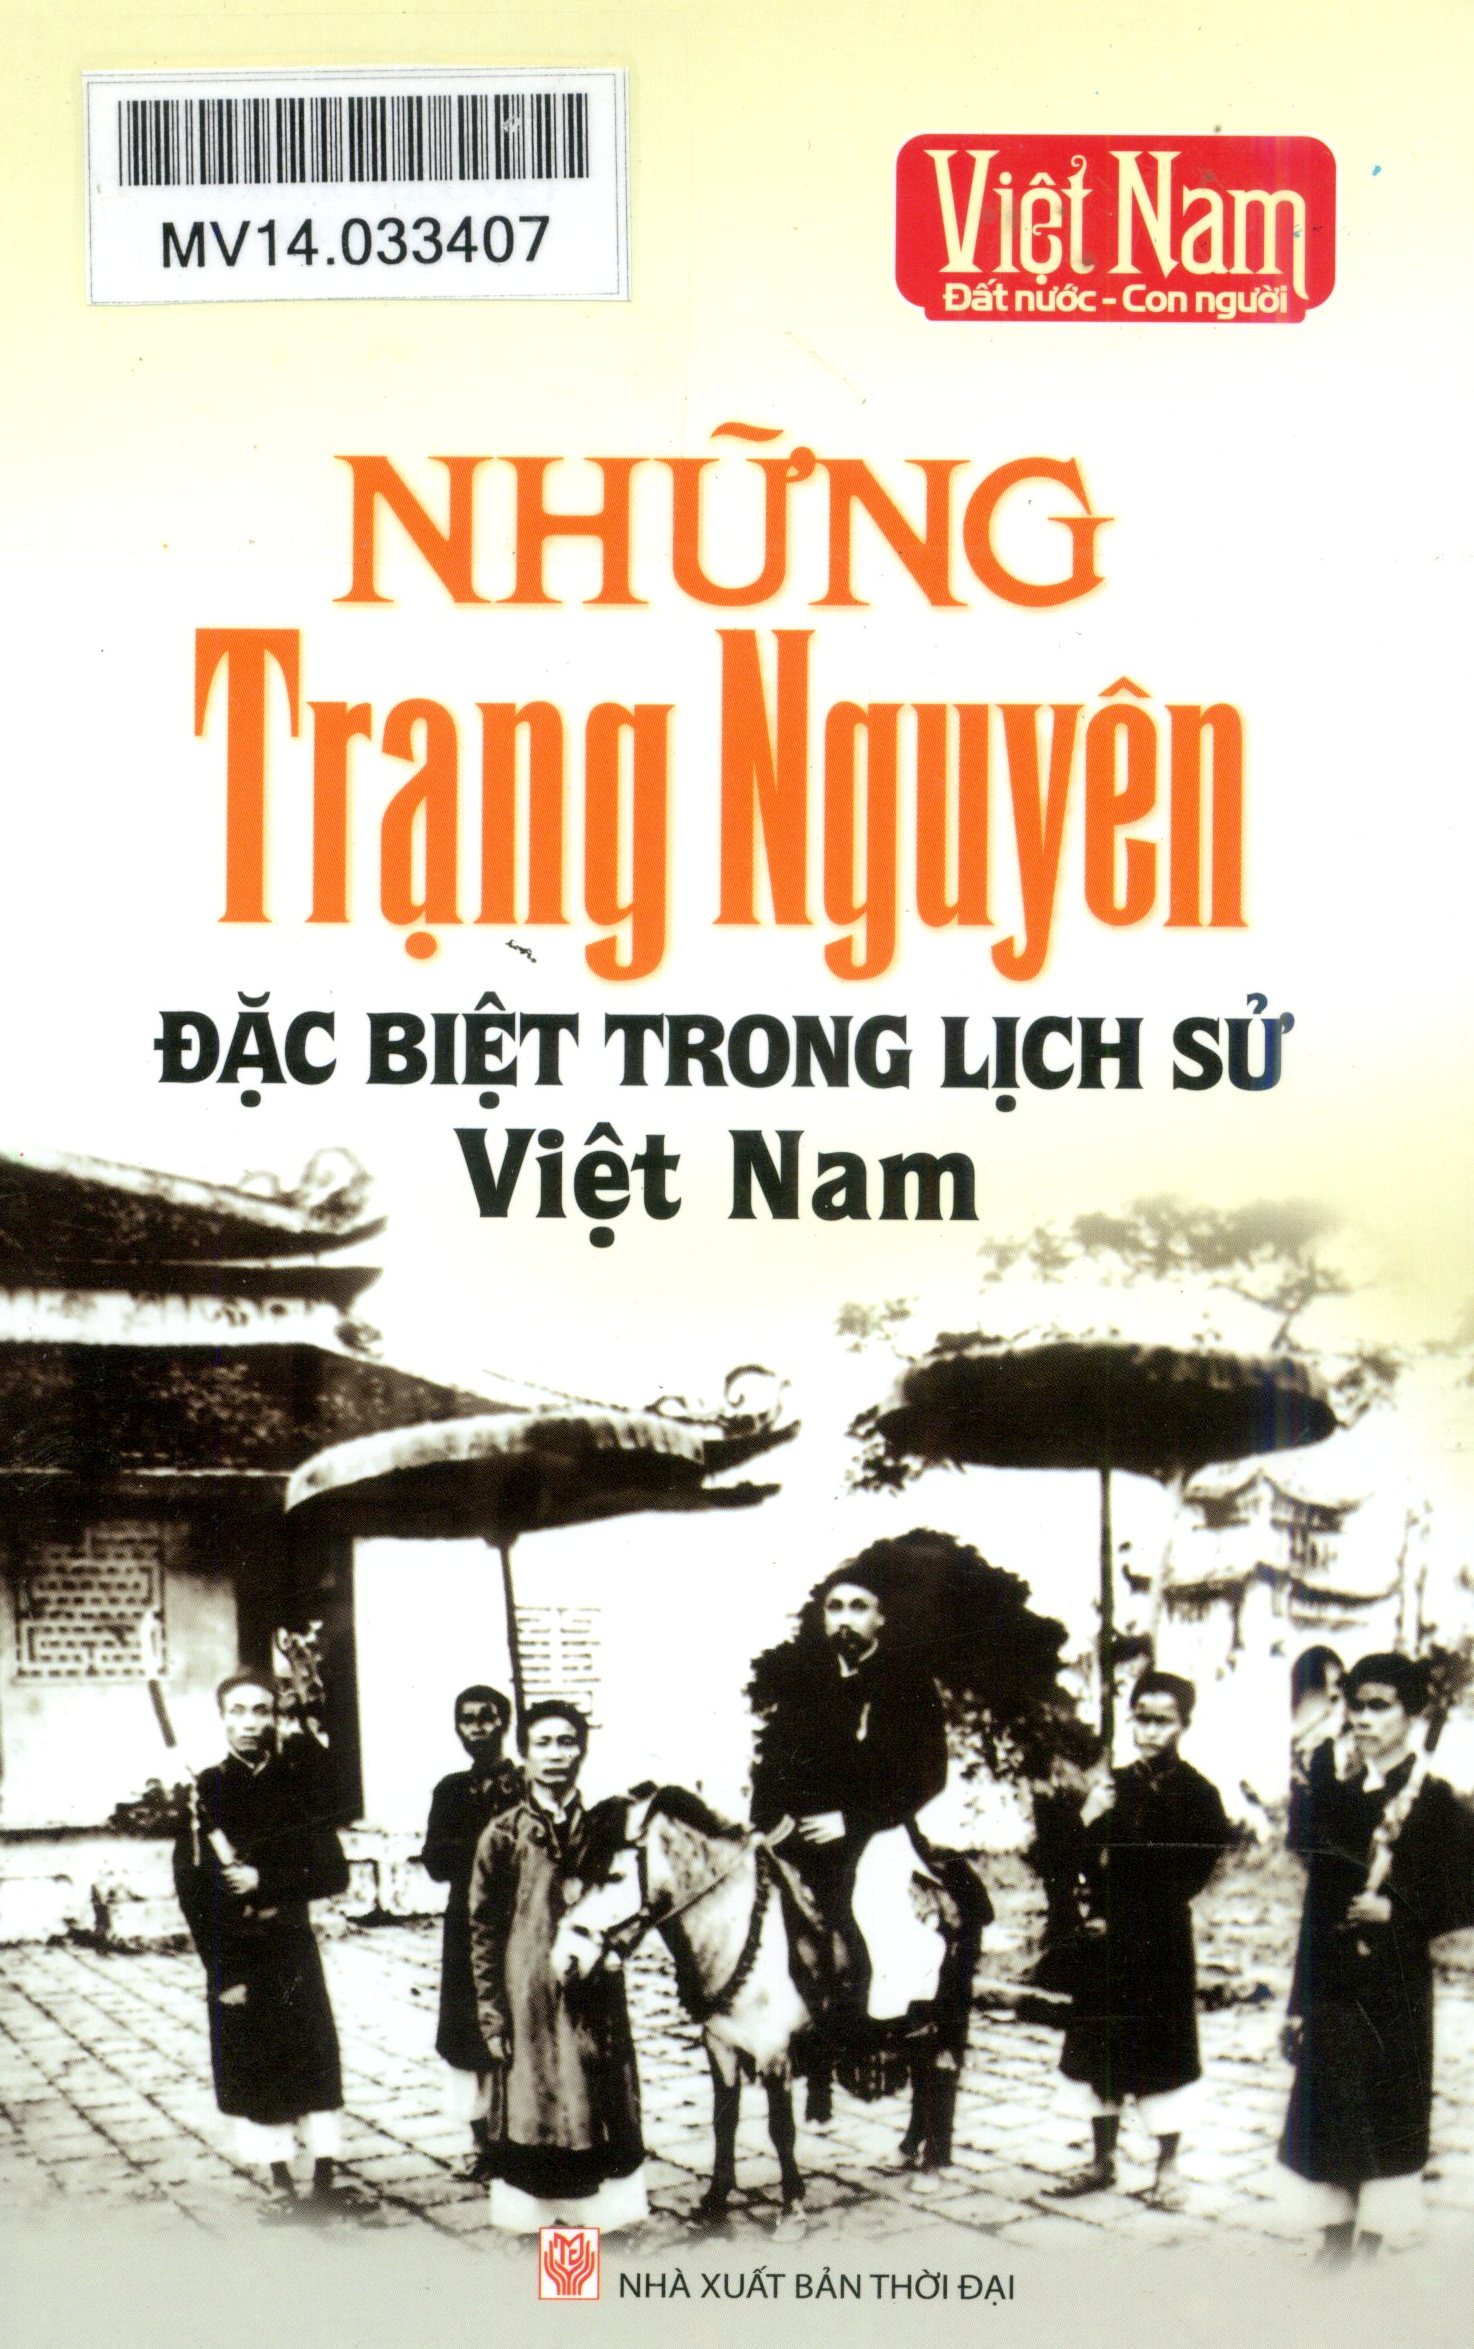 GTS: Những trạng nguyên đặc biệt trong lịch sử Việt Nam